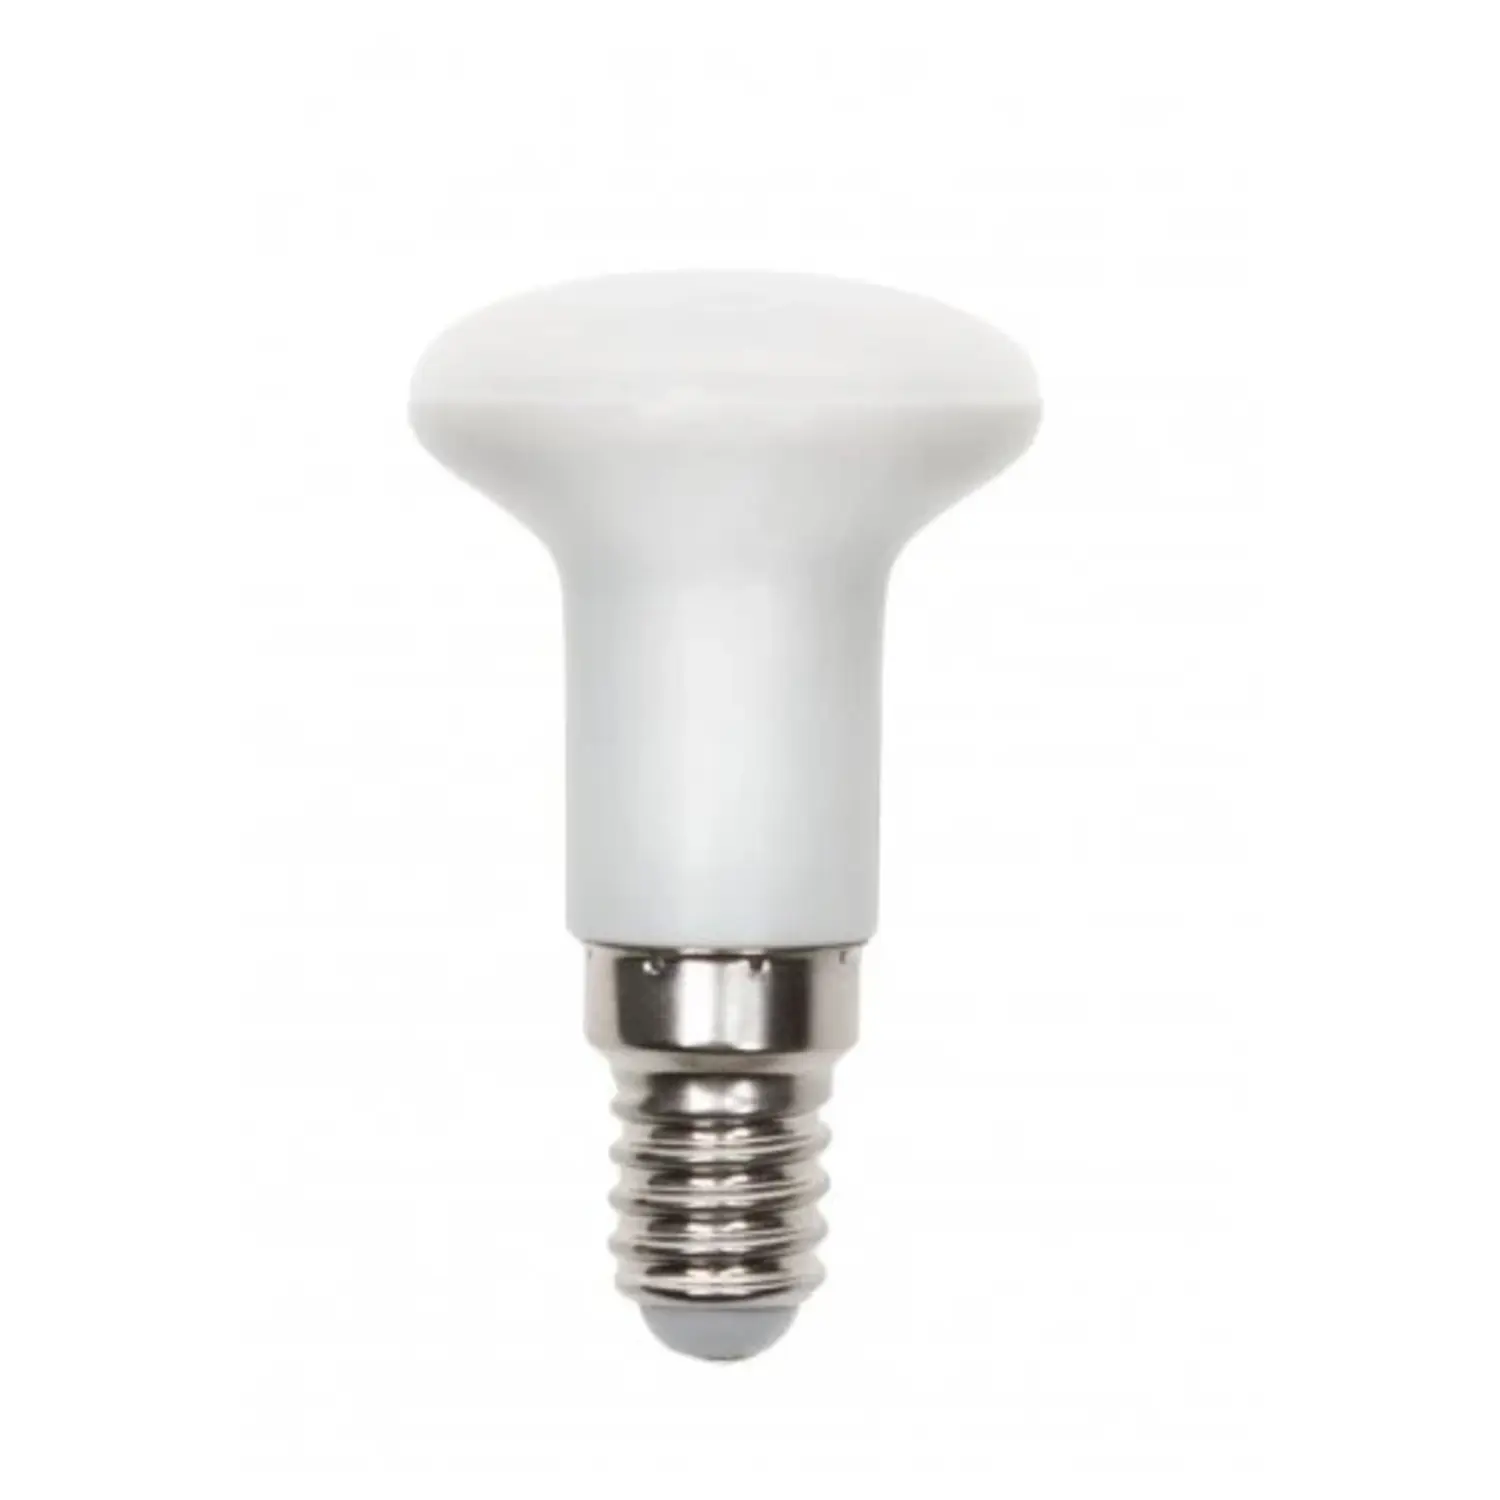 immagine del prodotto lampadina spot led r39 per porta faretto e14 3 watt bianco freddo